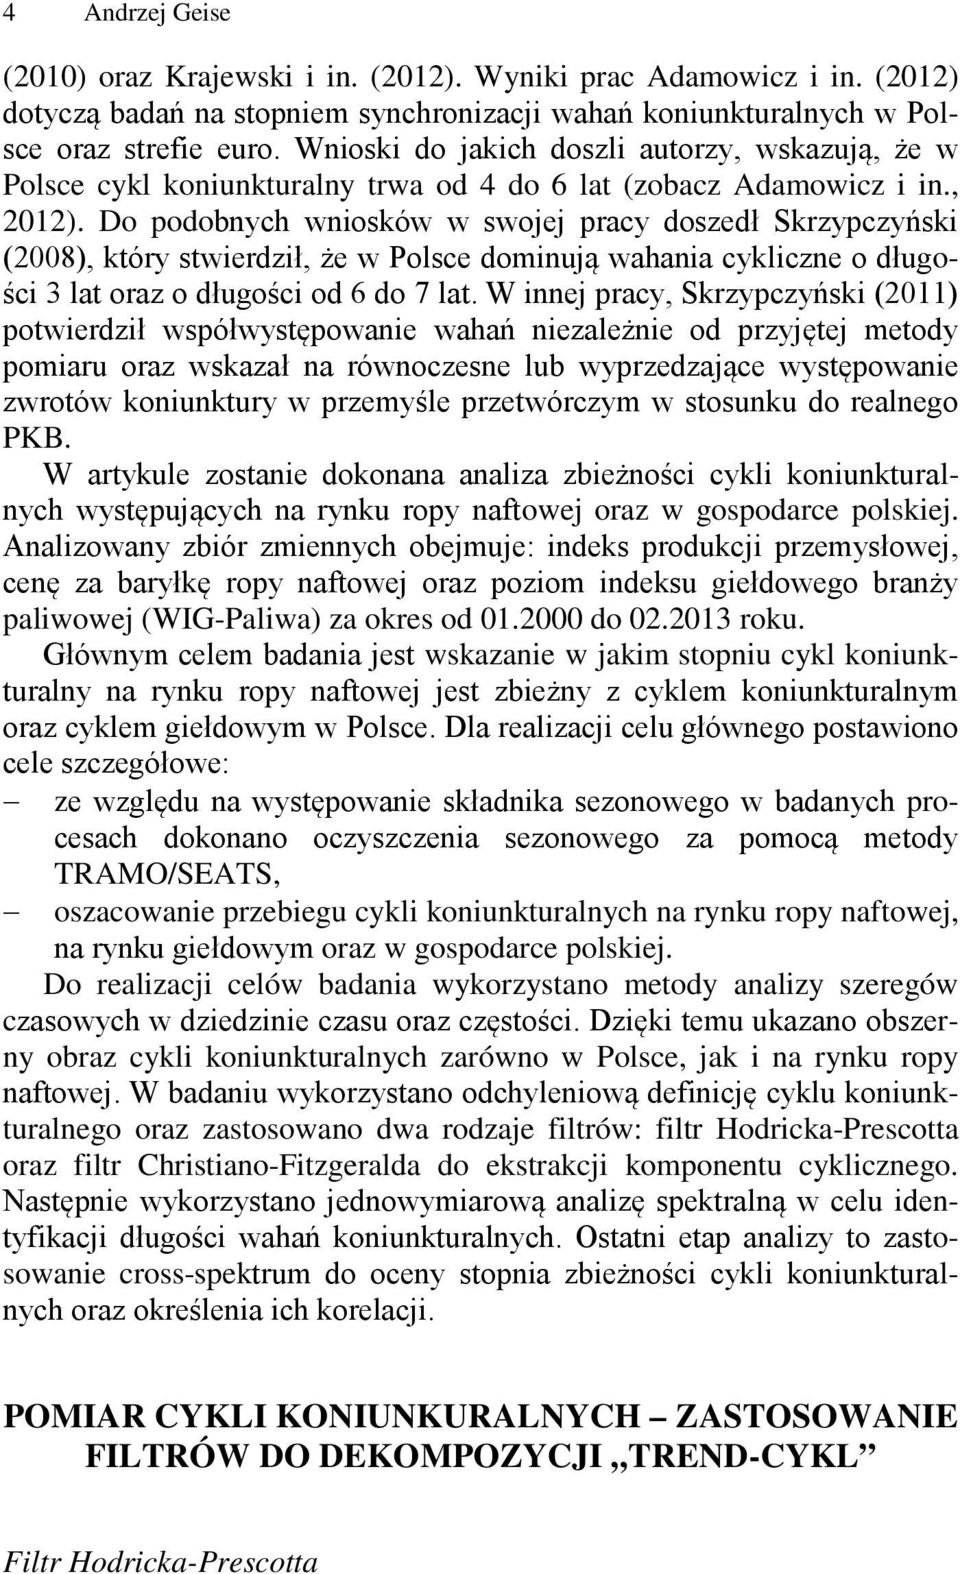 Do podobnych wniosków w swojej pracy doszedł Skrzypczyński (28), który stwierdził, że w Polsce dominują wahania cykliczne o długości 3 lat oraz o długości od 6 do 7 lat.